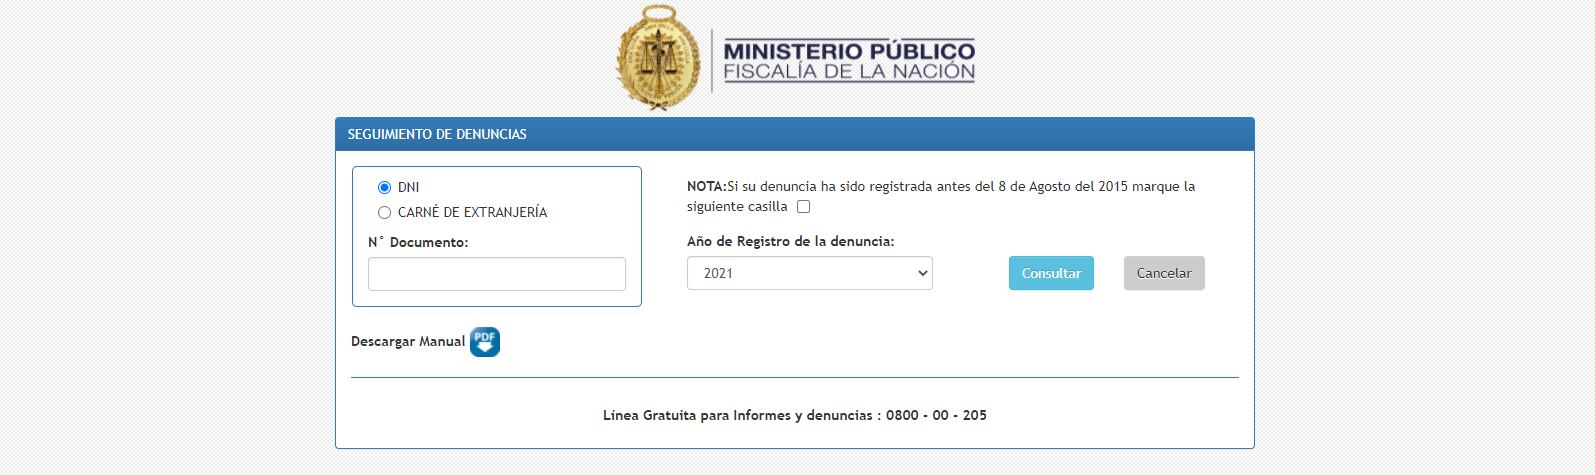 Para acceder a este servicio virtual del Ministerio Público, solo debe contar con su número de documento de identidad. (Imagen: Ministerio Público)